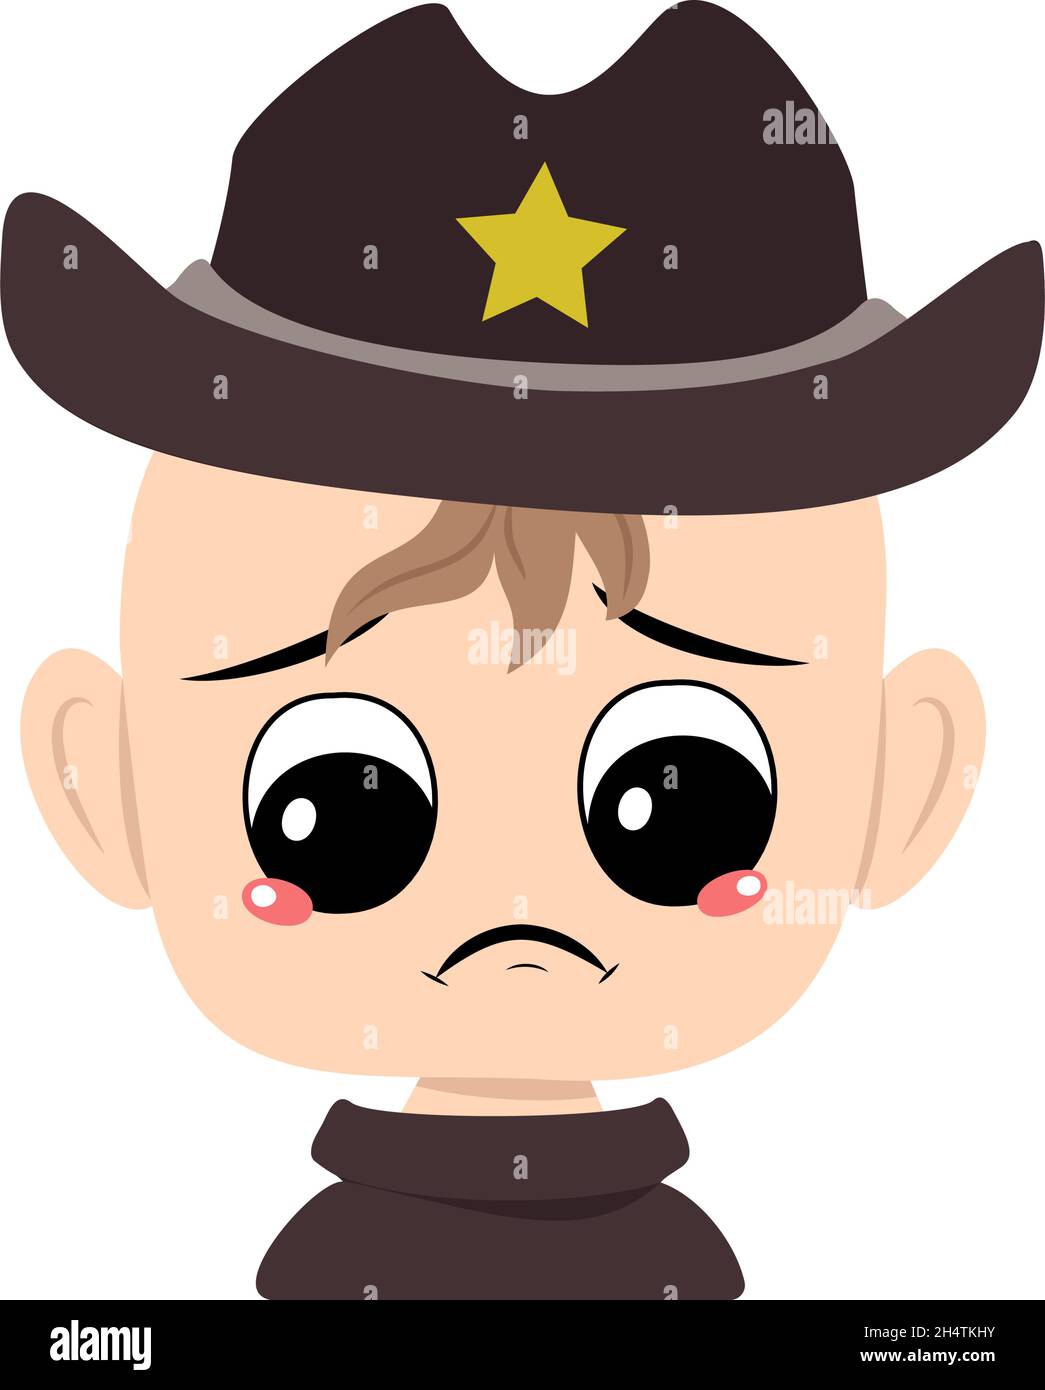 Junge mit Weinen und Tränen Emotion, trauriges Gesicht, depressive Augen in Sheriff Hut mit gelben Stern. Kopf von niedlichem Kind mit melinischem Ausdruck im Karnevalskostüm für den Urlaub Stock Vektor